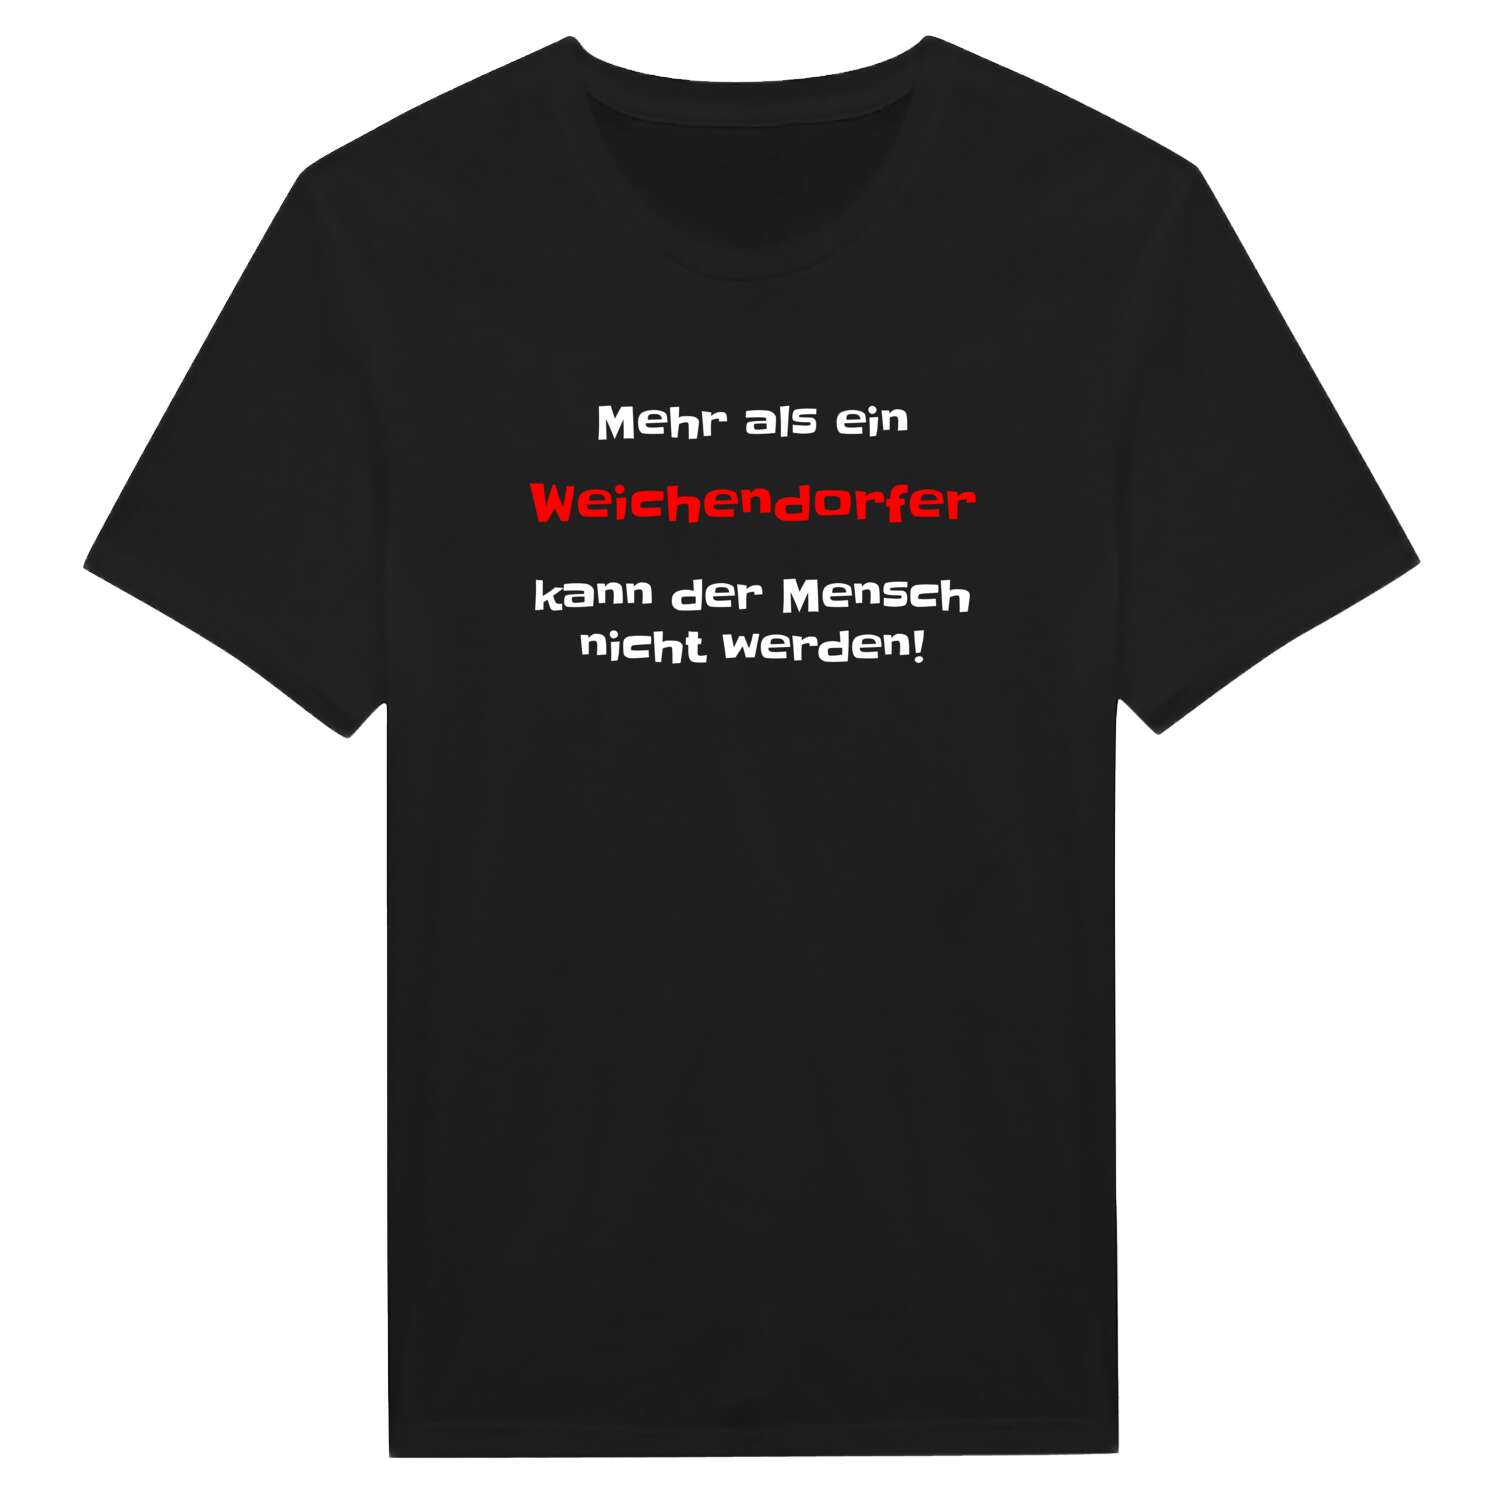 Weichendorf T-Shirt »Mehr als ein«